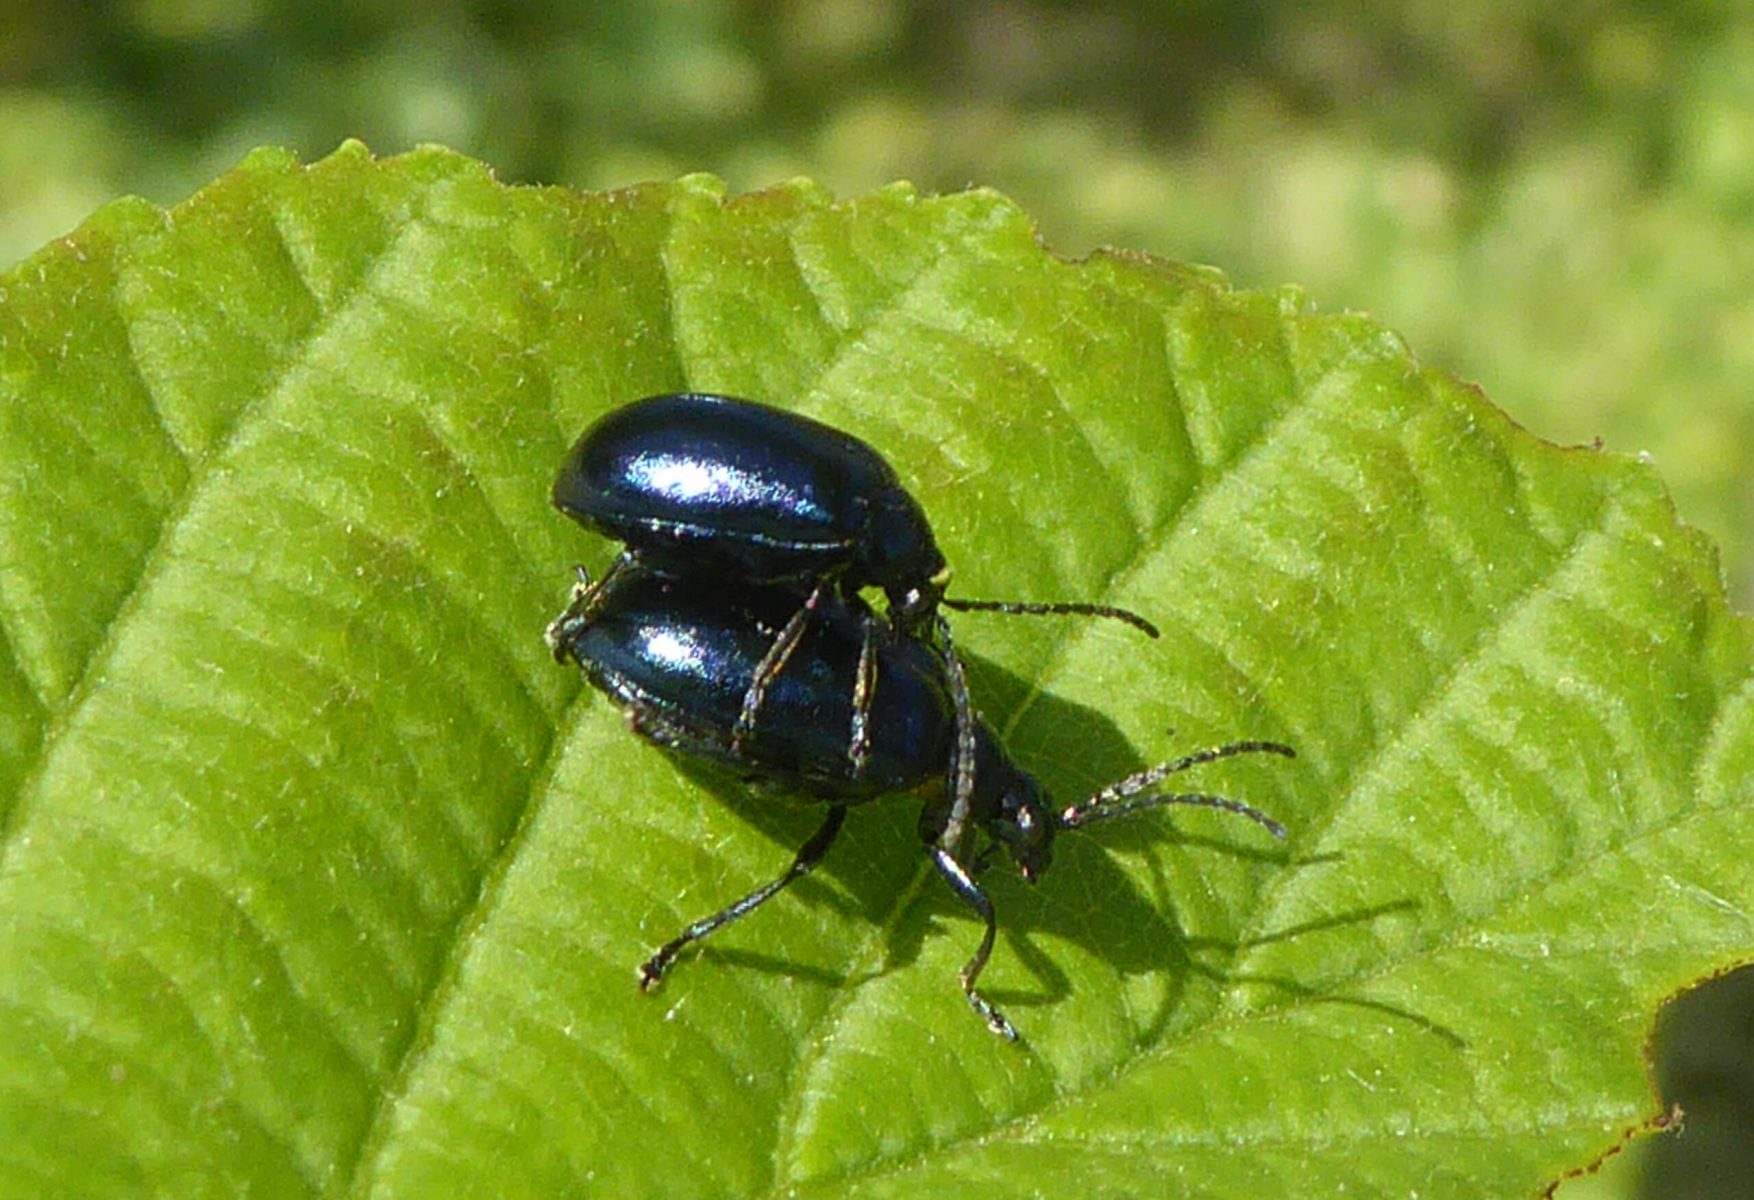 Alder beetles